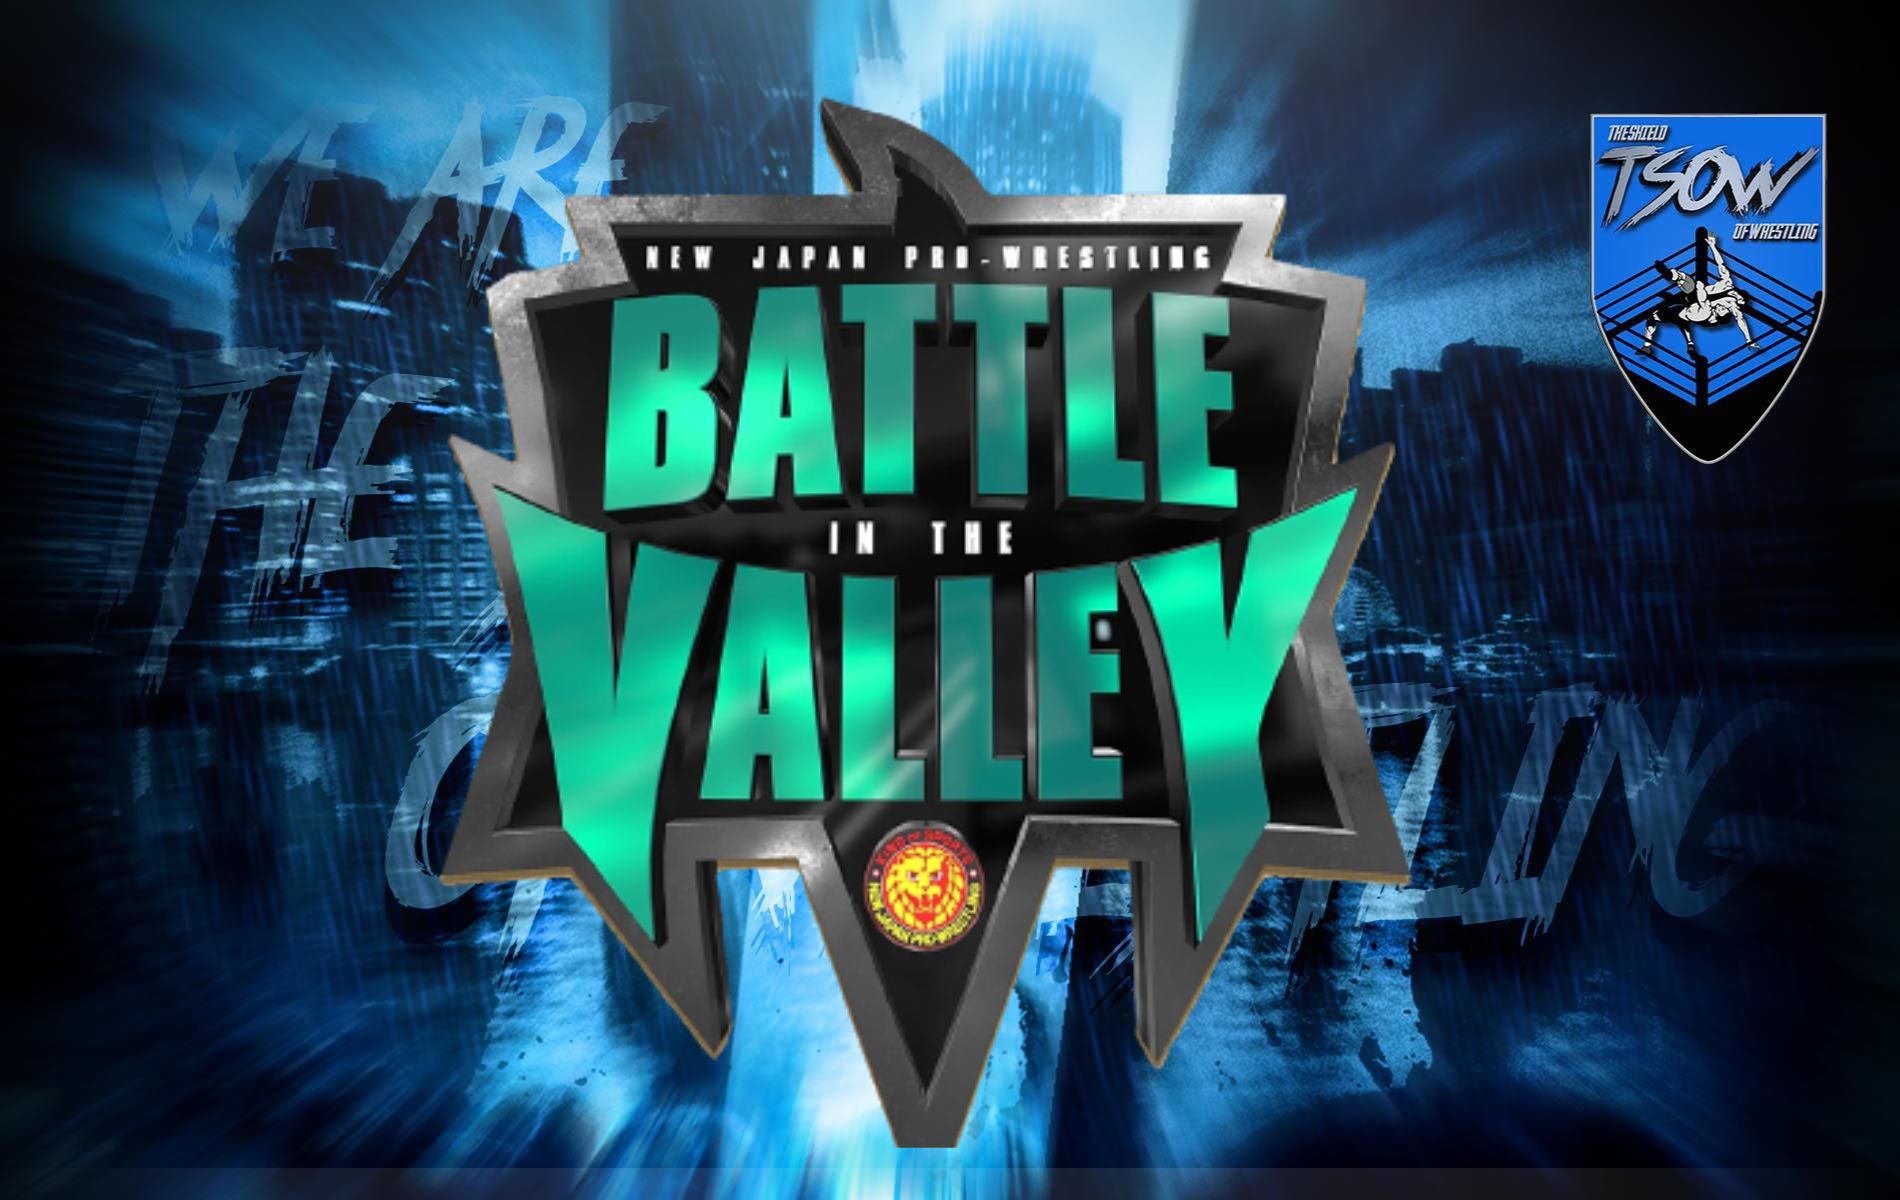 Battle in the Valley 2023 titolo mondiale IWGP sarà difeso